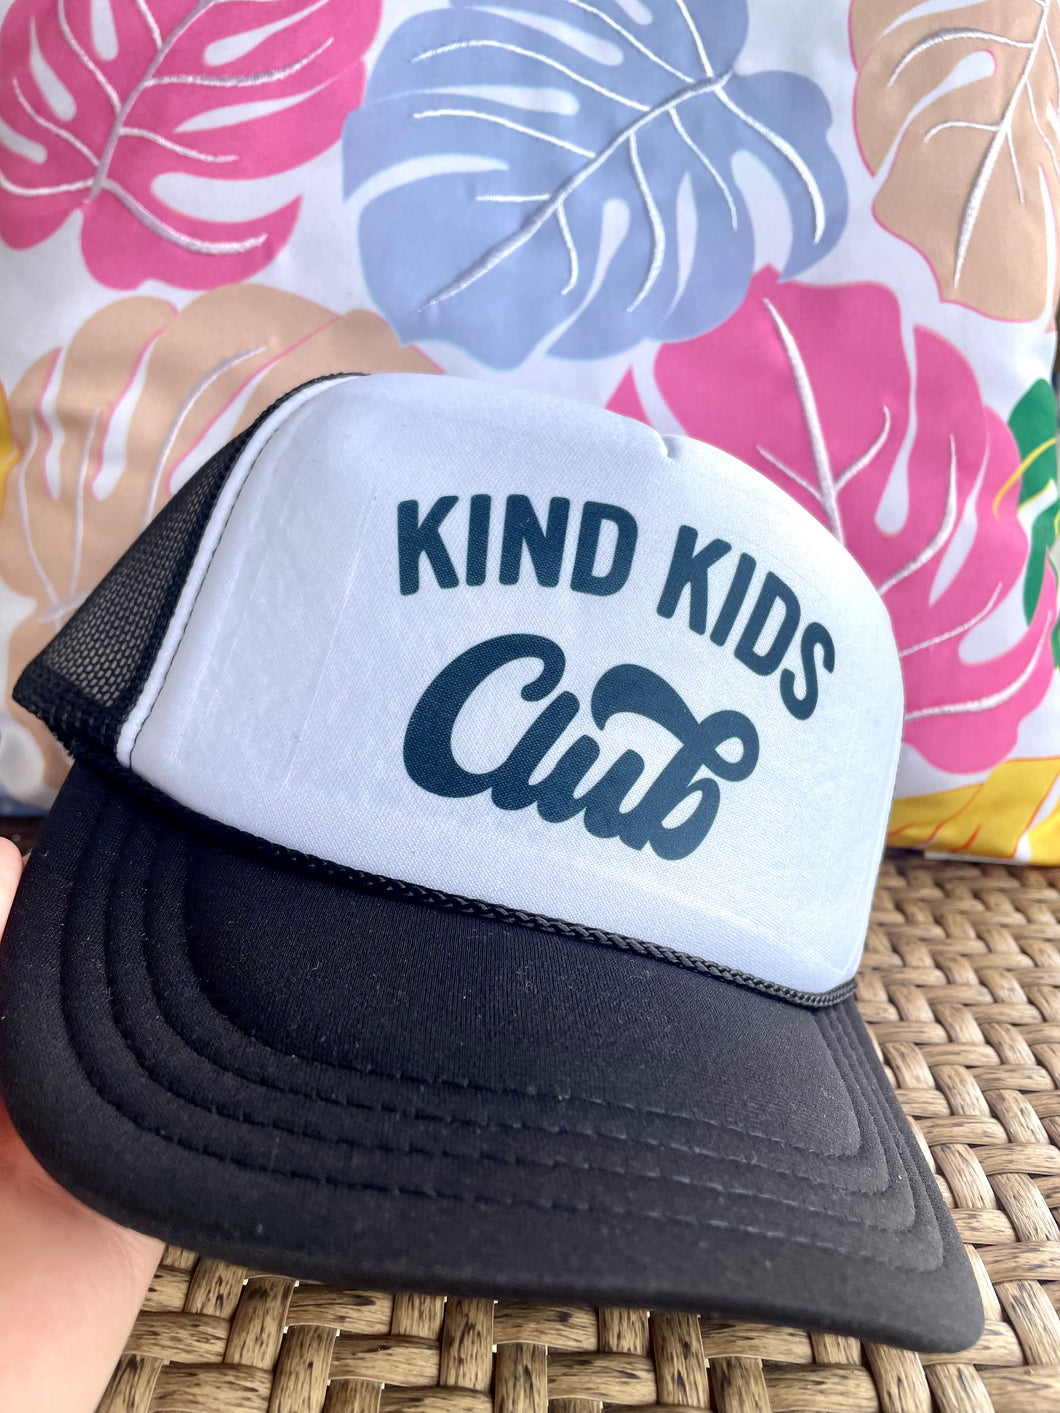 KIND KIDS CLUB Kid Trucker Hat